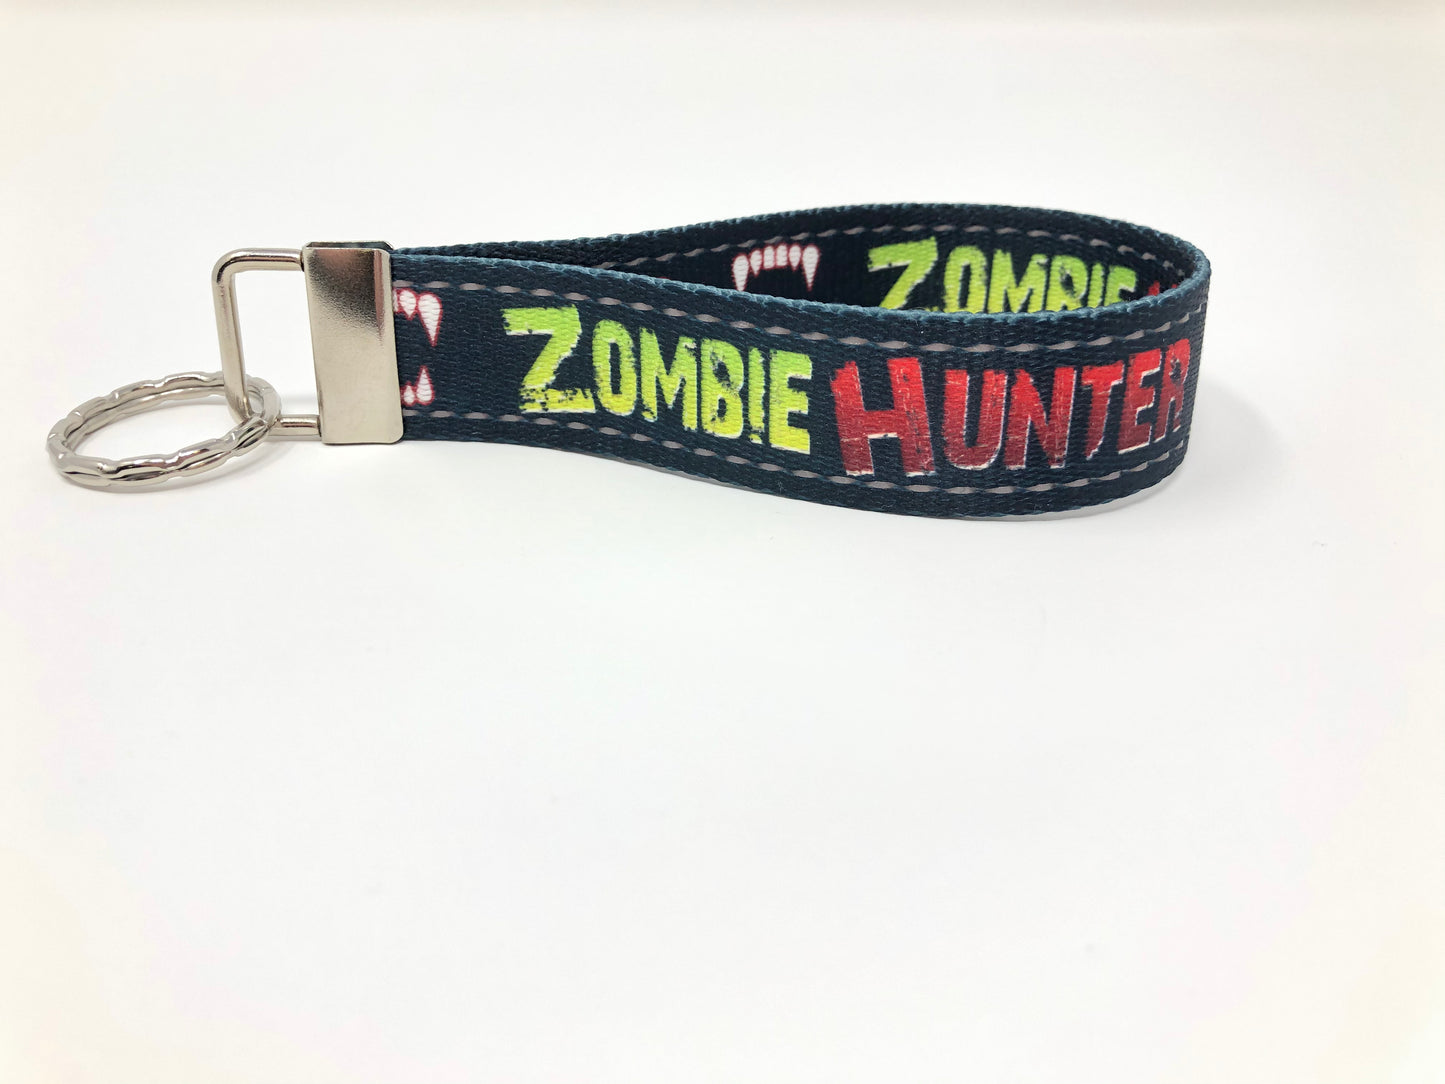 Zombie Hunter wristlet keychain